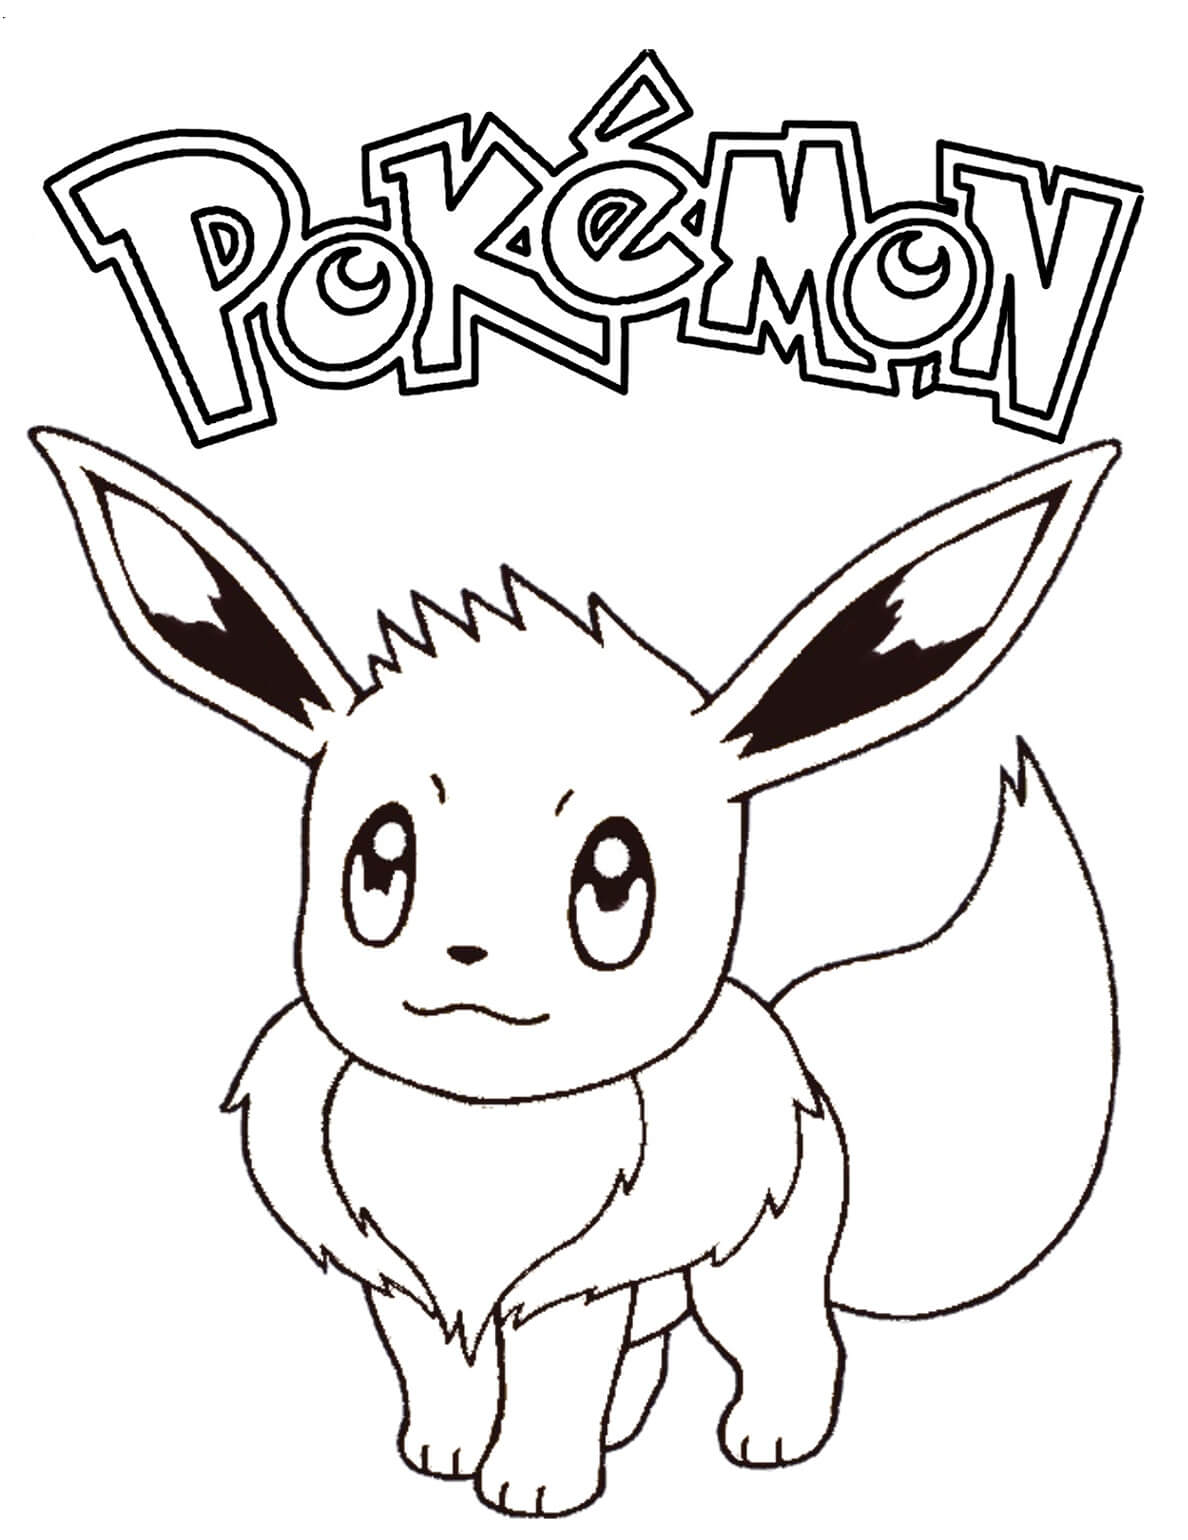 Vẽ và tô màu Pikachu Pokémon / Ami Channel - YouTube